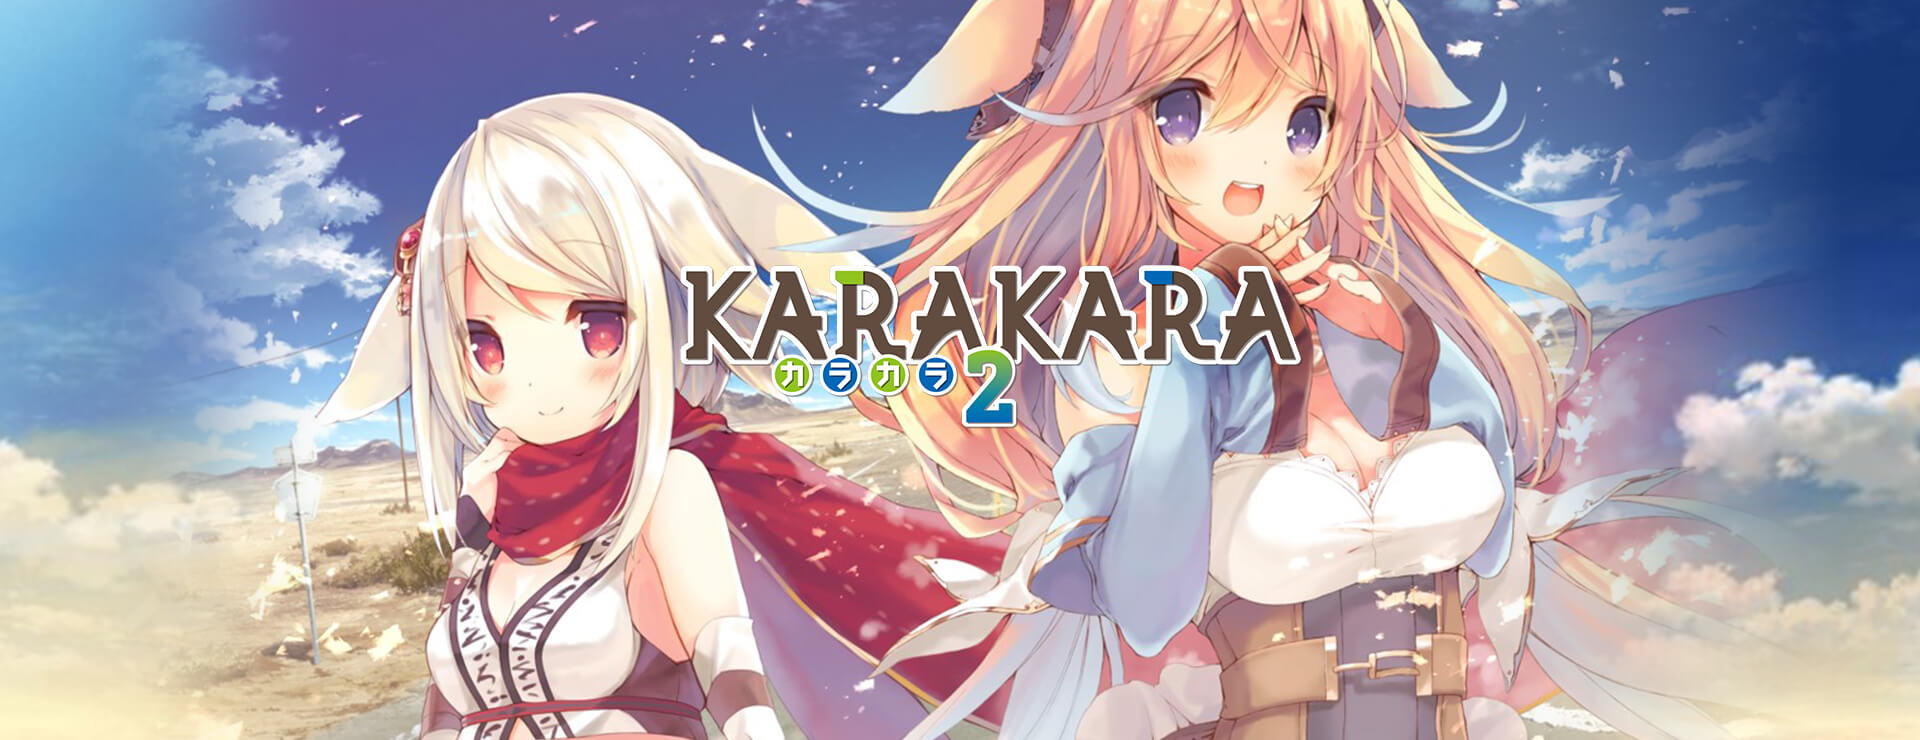 KARAKARA2 - ビジュアルノベル ゲーム